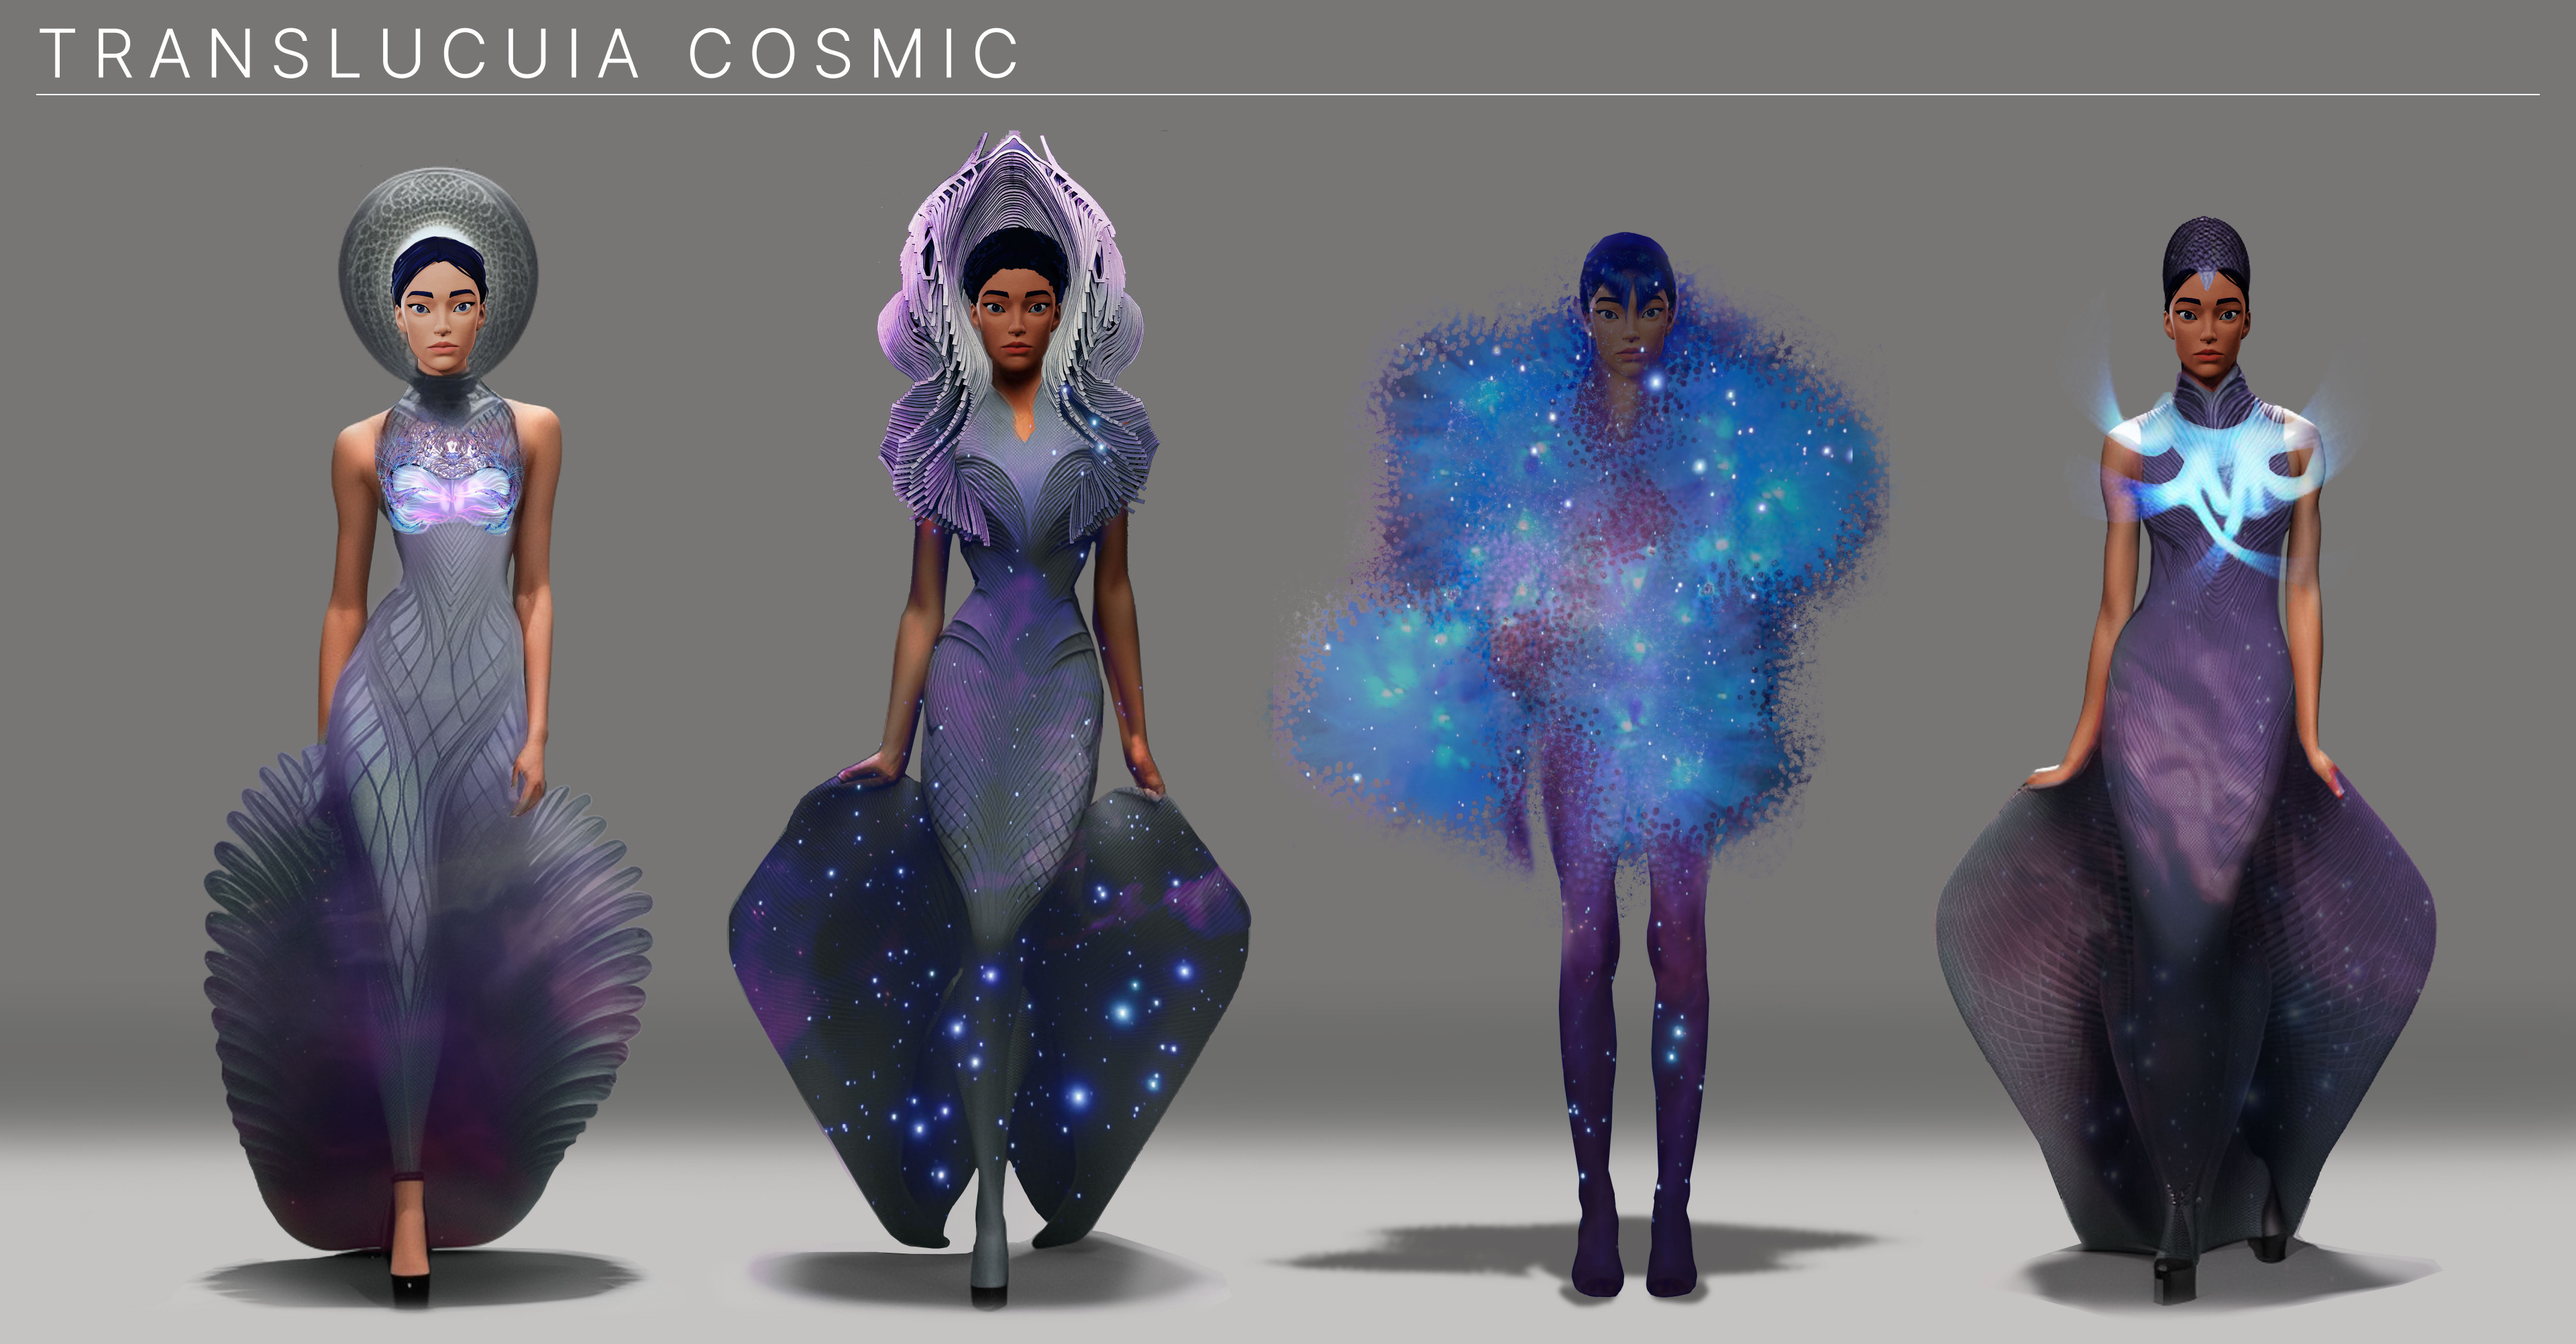 Female cosmic costume design.